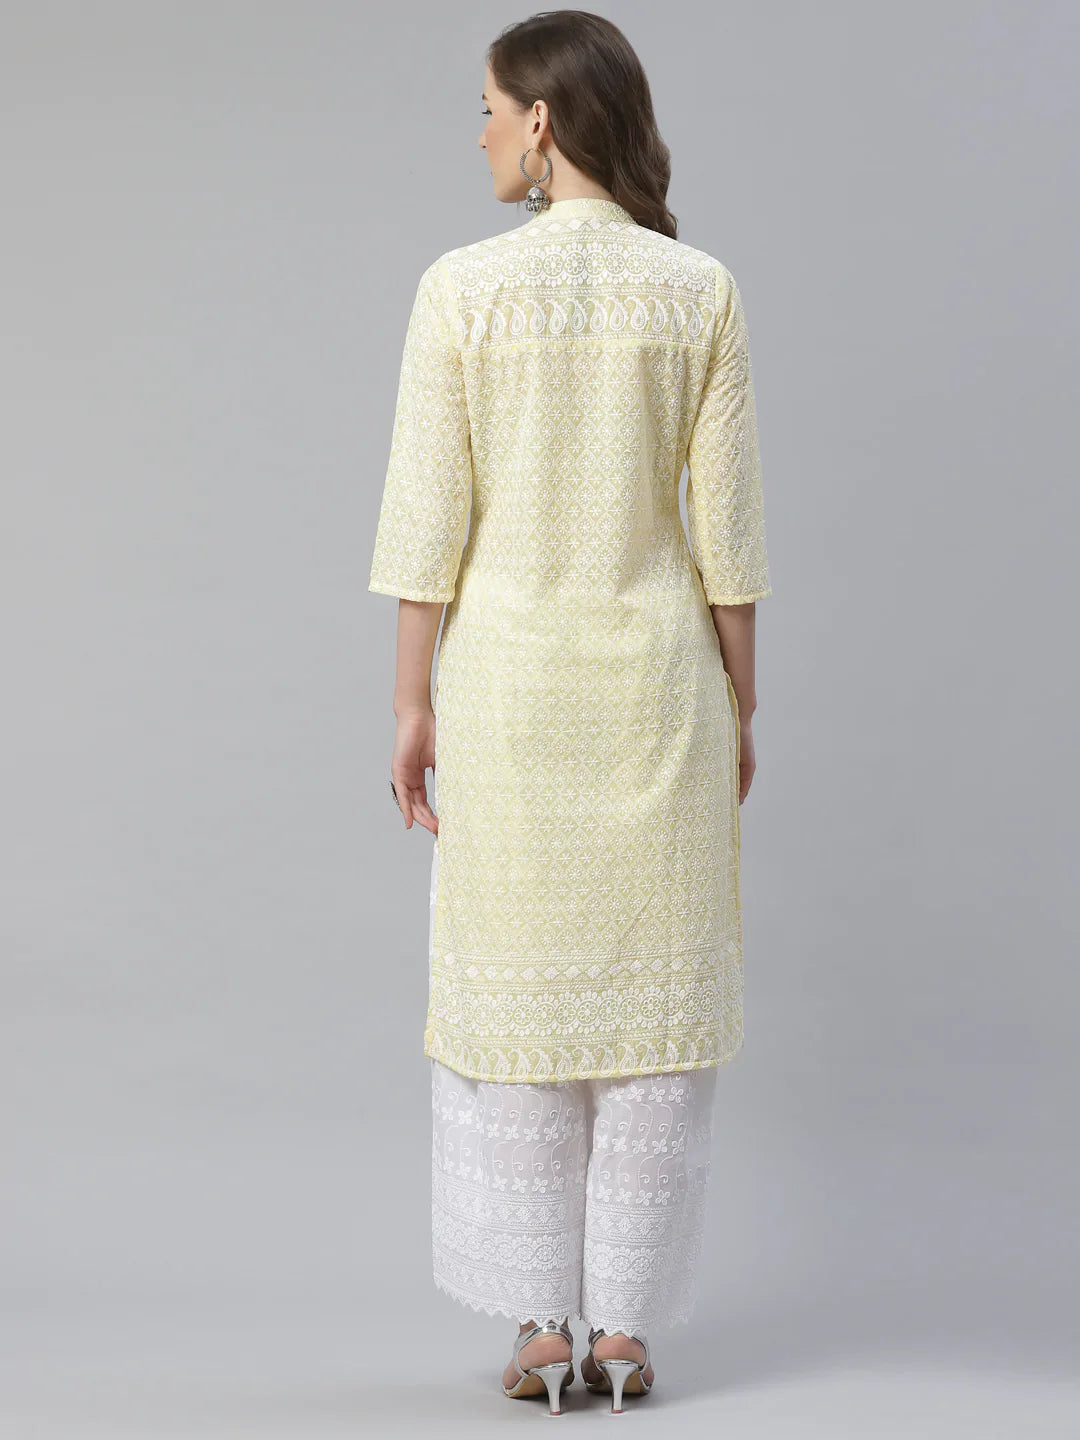 Jompers Women's Yellow & White Chikankari Embroidered Kurta with Palazzos - Distacart